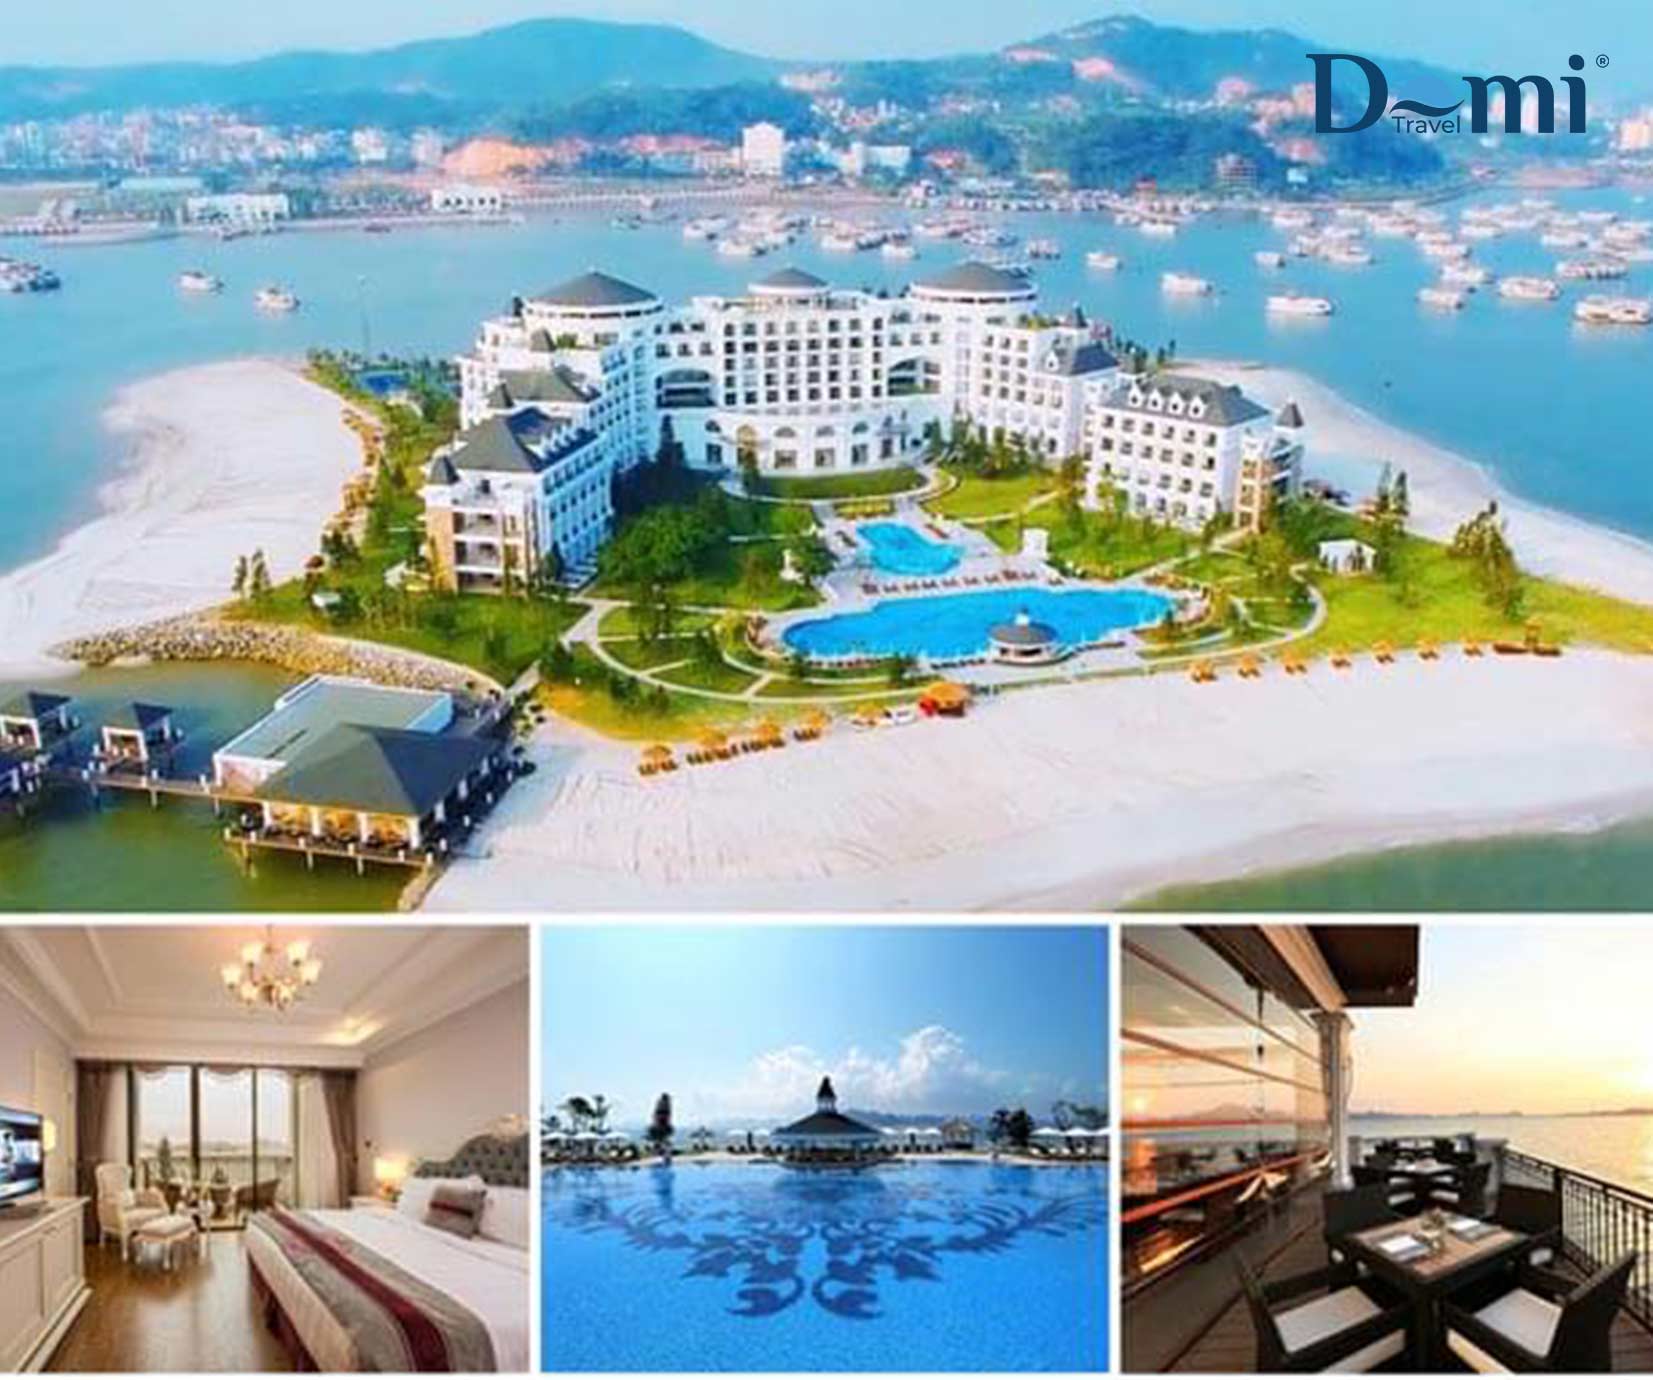 Thiên đường nghỉ dưỡng tại Vinpearl Resort & Spa Hạ Long với gói Booking khách sạn nghỉ dưỡng đẳng cấp 5 sao tại Vinpearl Resort & Spa Hạ Long + Xe đón tiễn tại Sân Bay